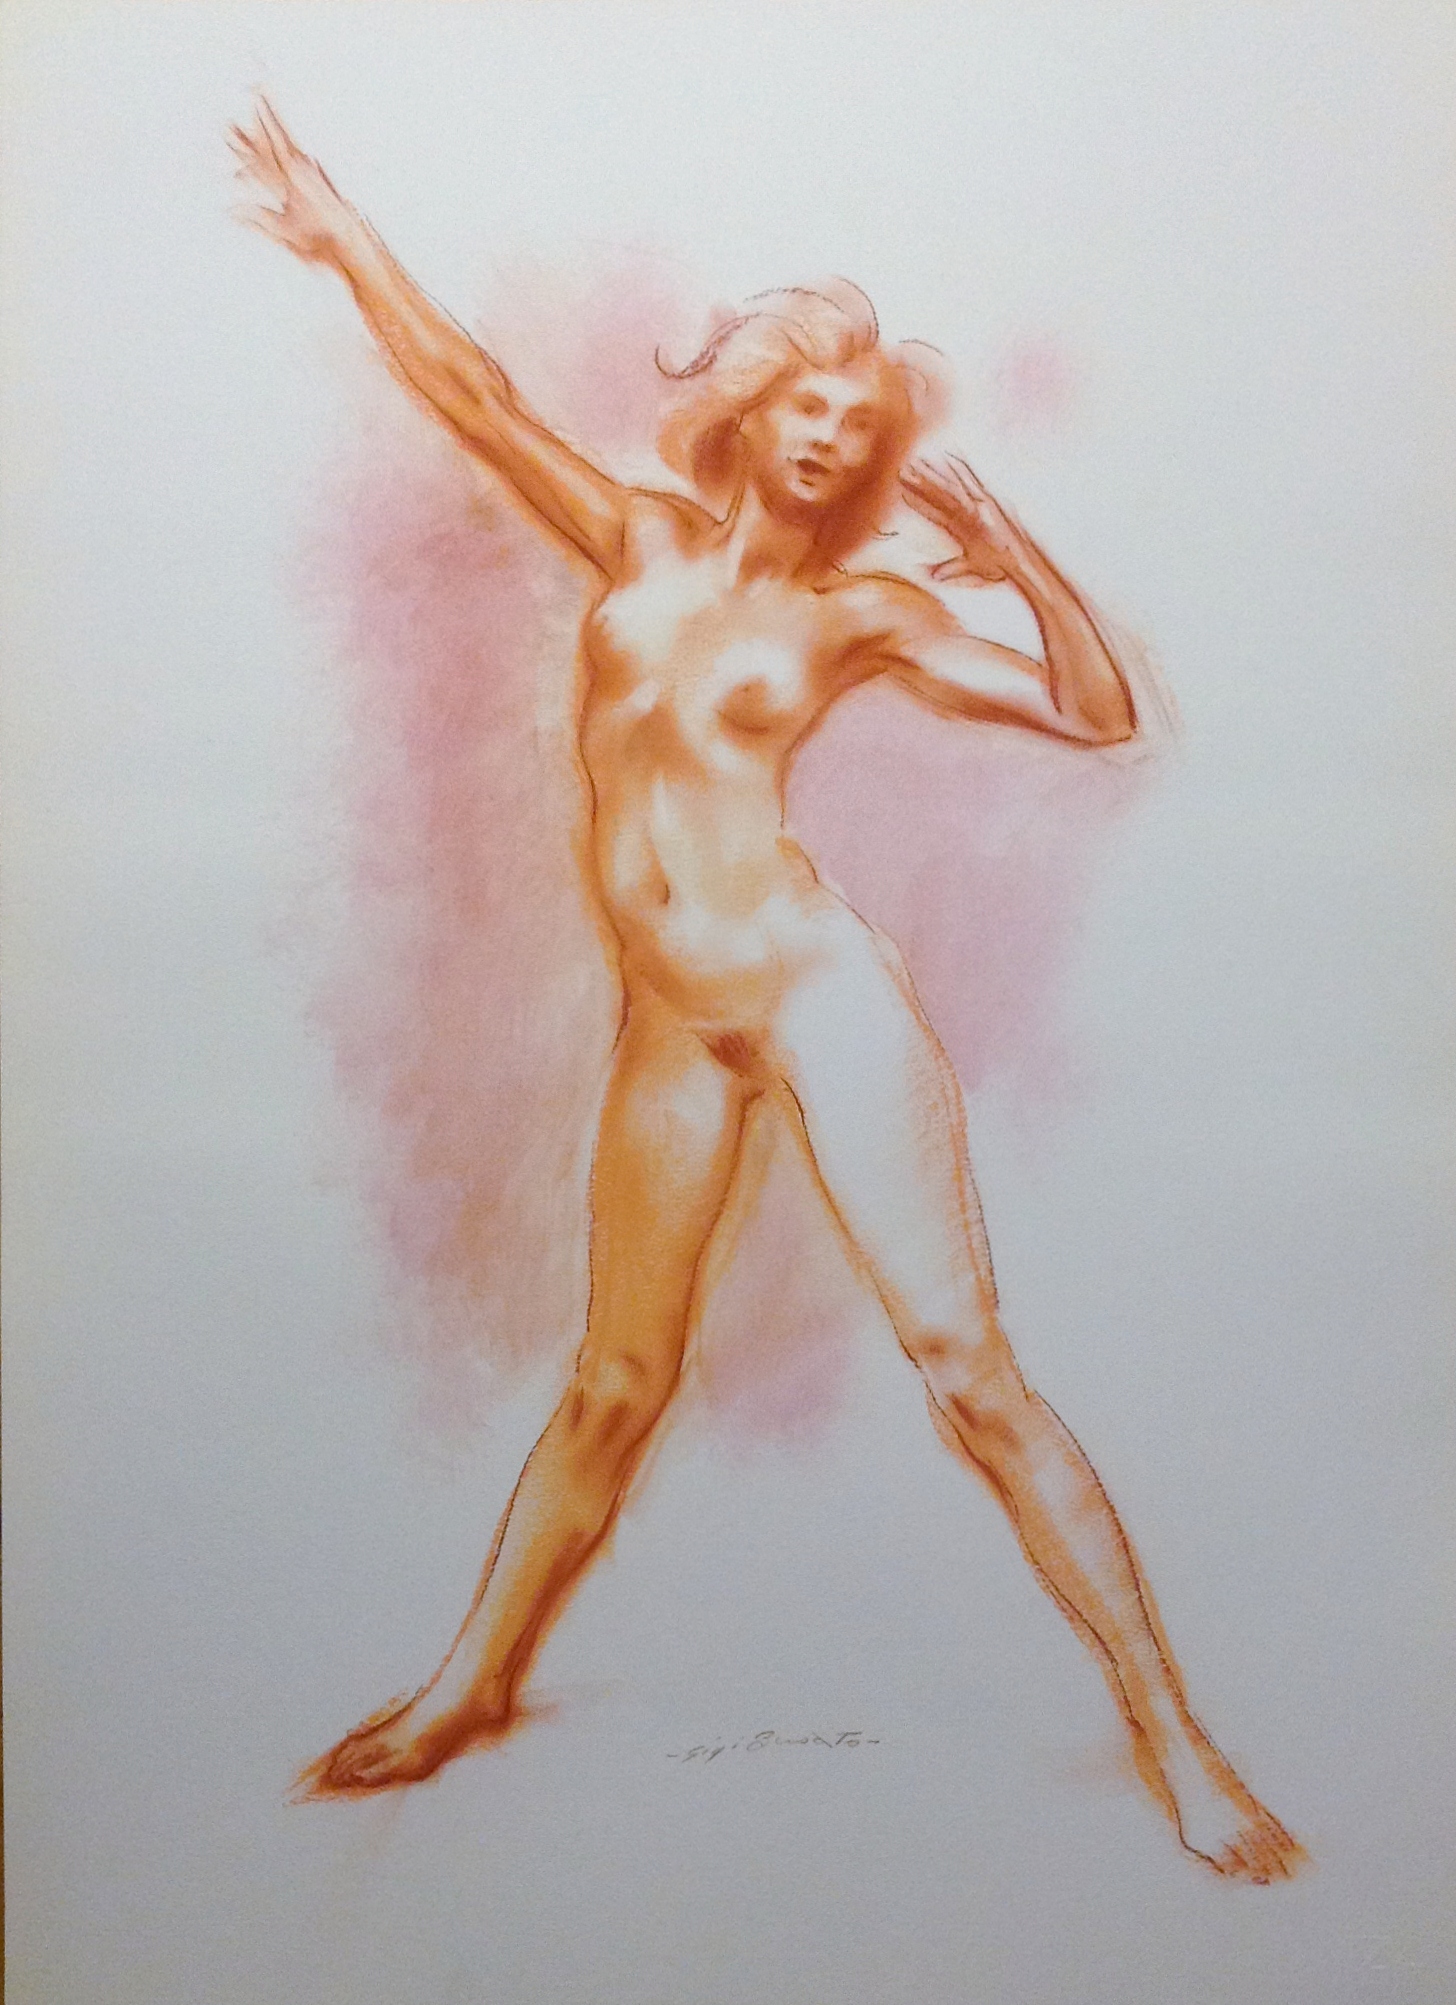 Nudo di donna disegno astratto di donna nuda di Gigi Busato disegno a pastello su carta colorato, collezione di famiglia